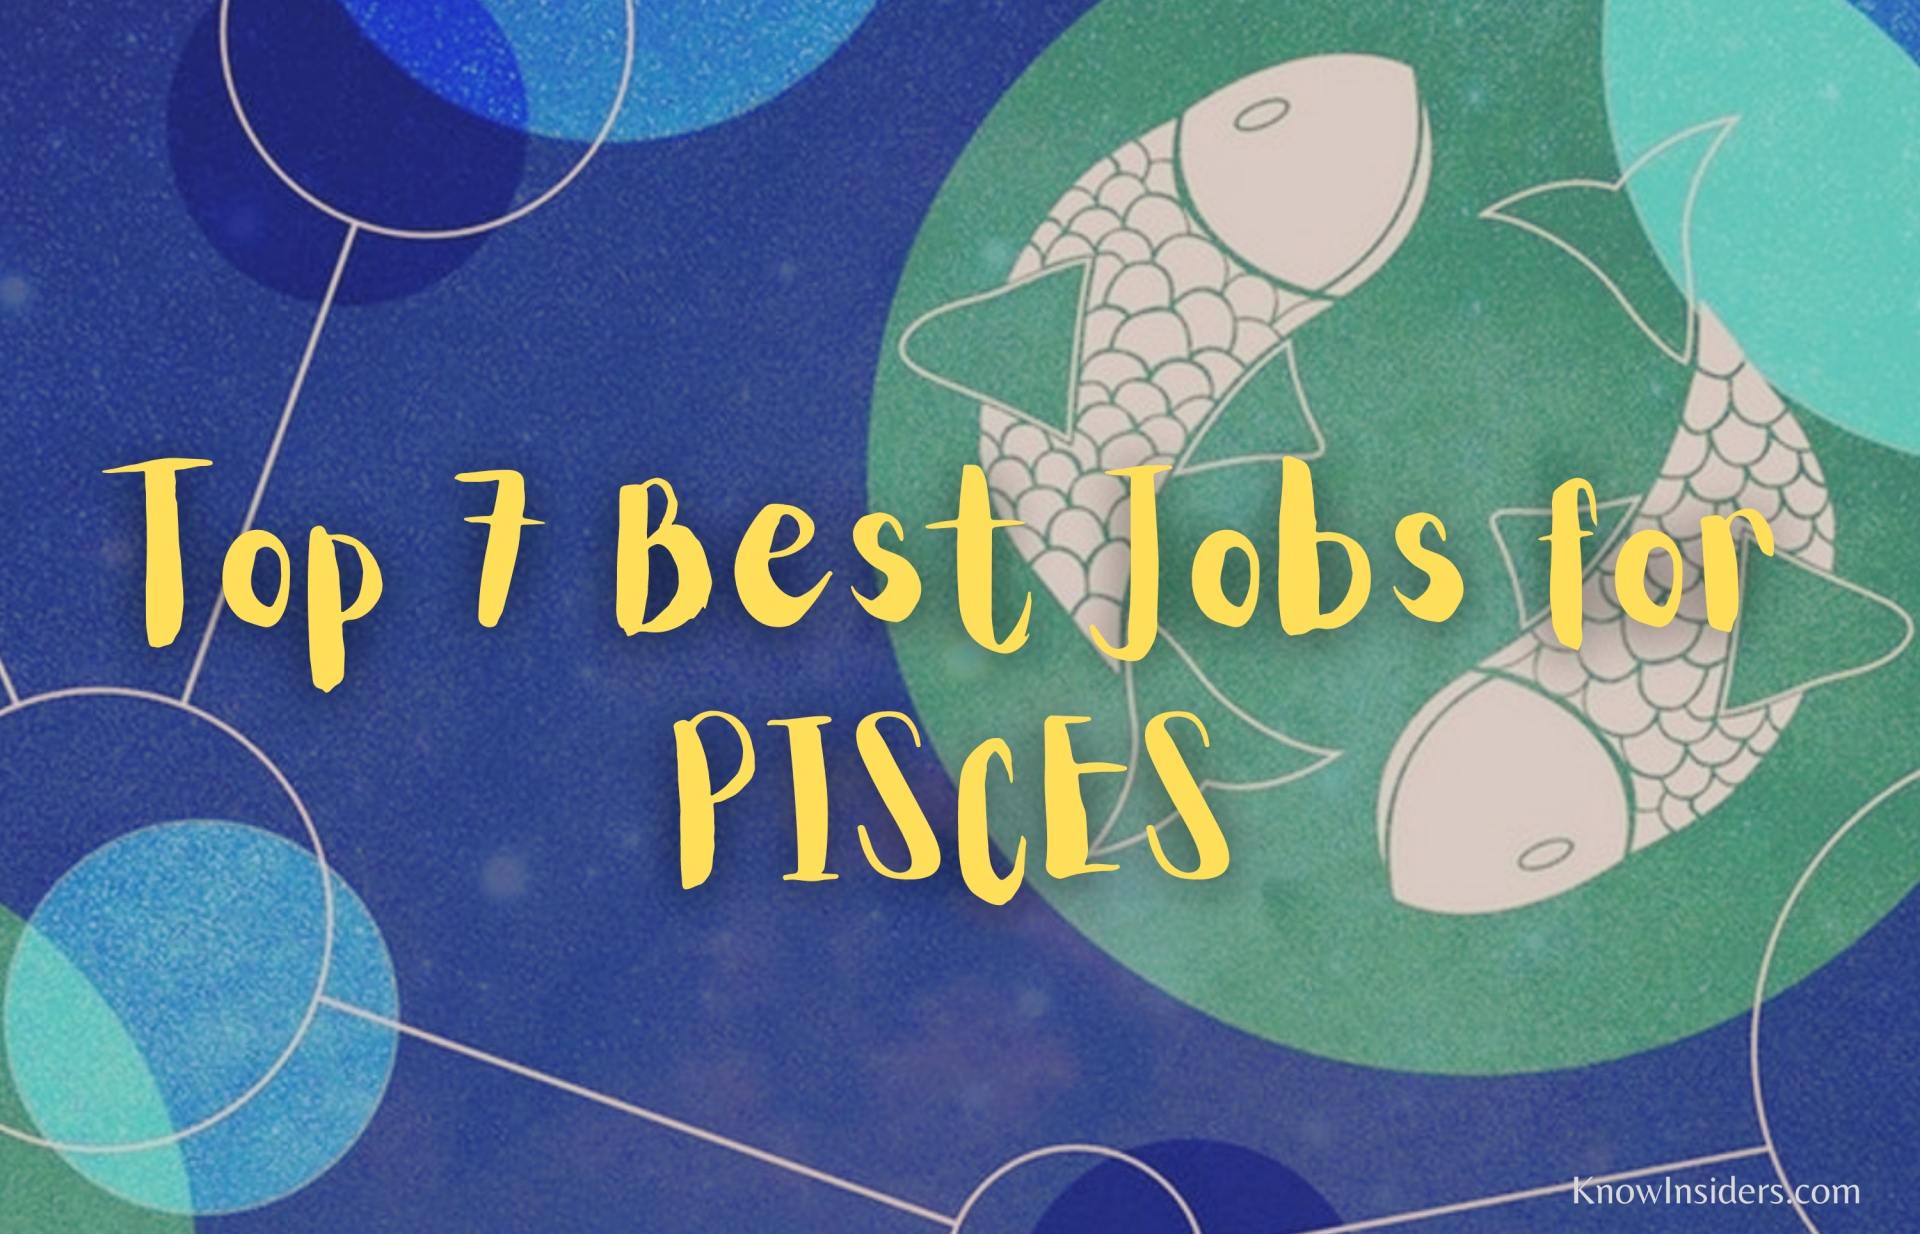 top 7 best jobs for pisces career guide horoscope